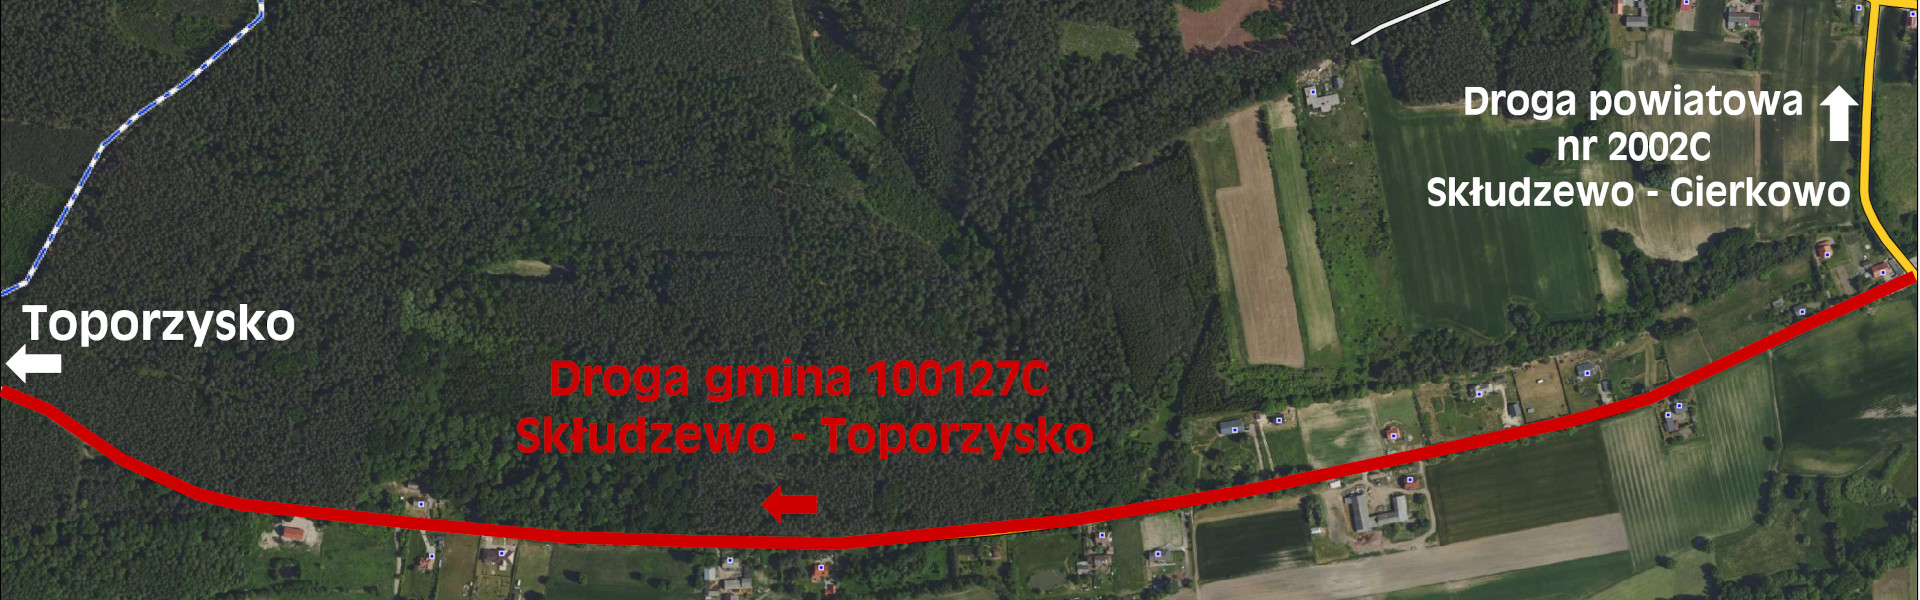 Wycinka drzew wzdłuż drogi Skłudzewo – Toporzysko